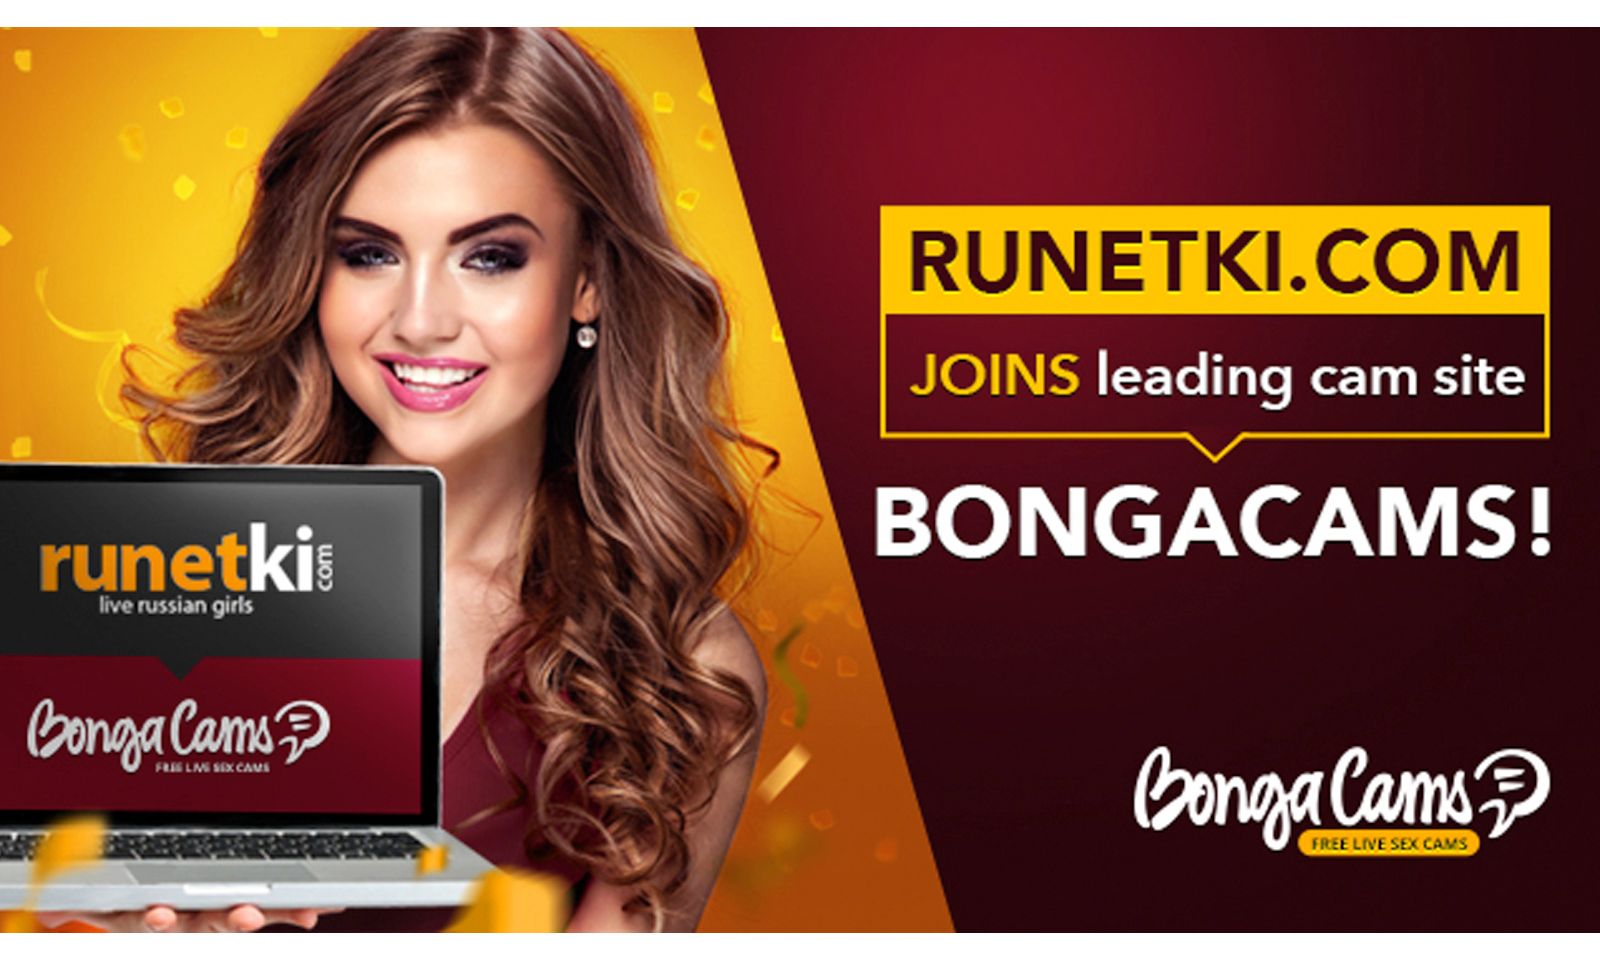 Runetki.com Acquired by Webcam Site BongaCams